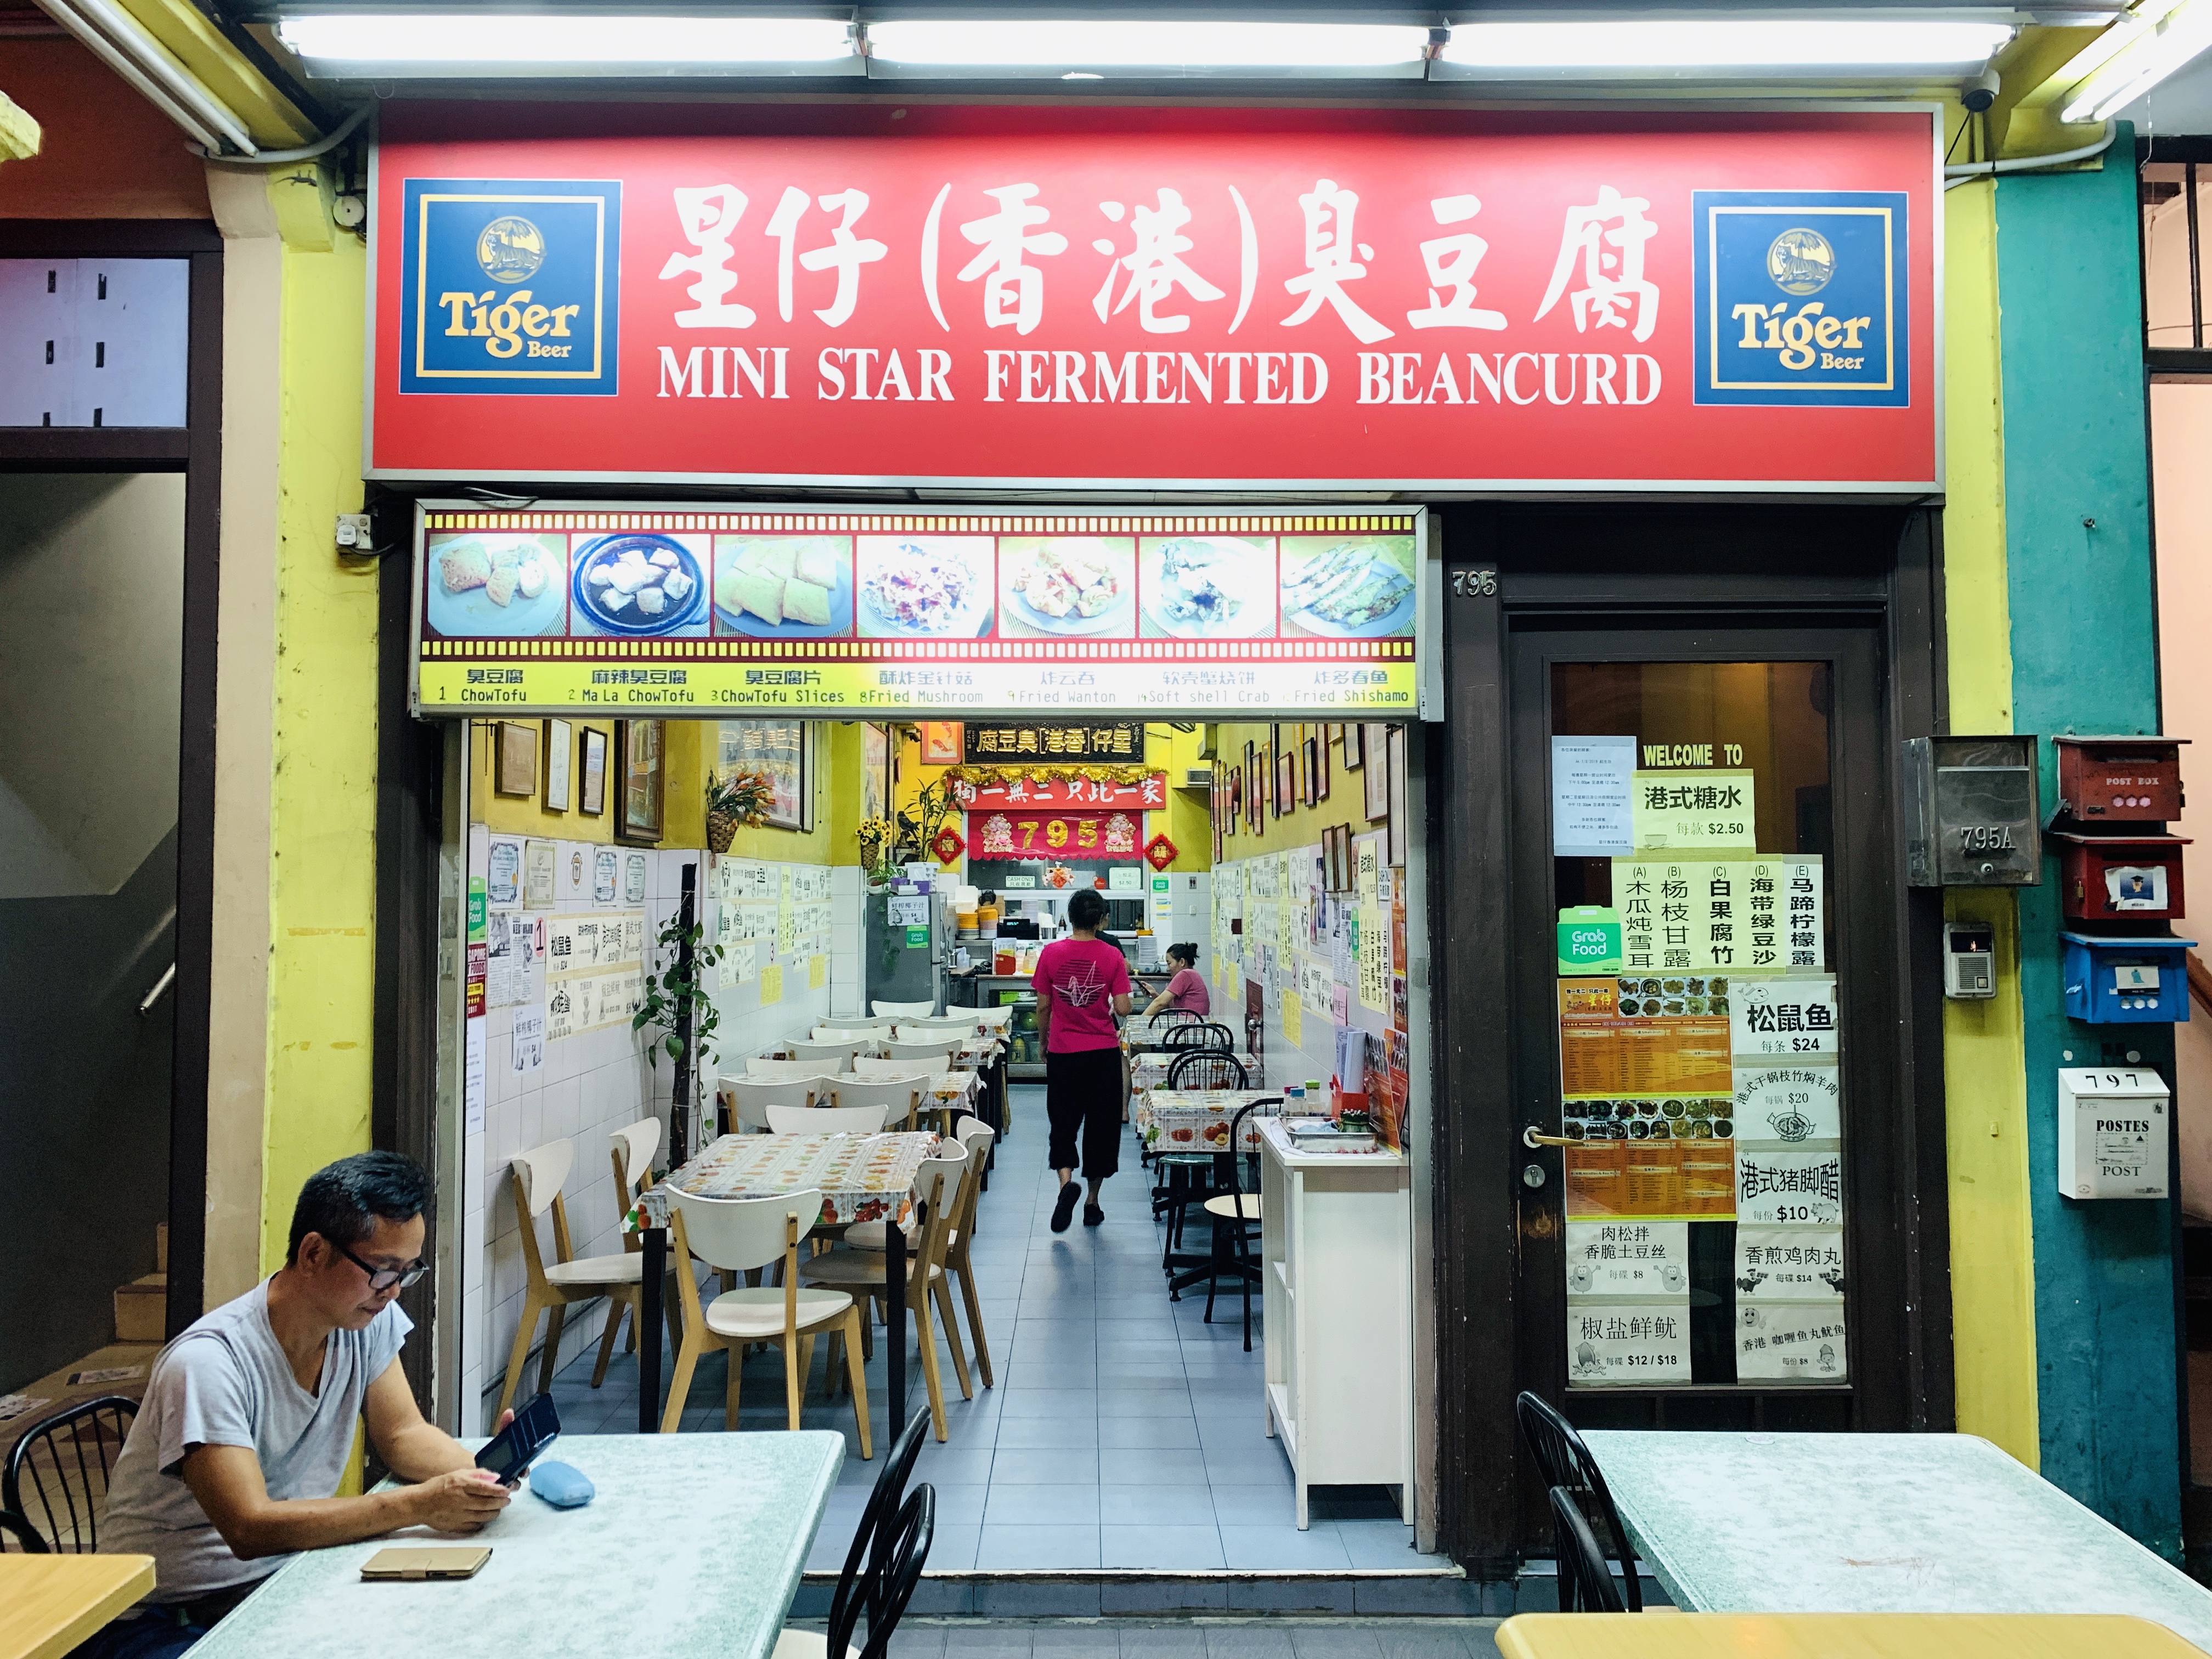 Mini Star (HK) Fermented Beancurd - Restaurant Front